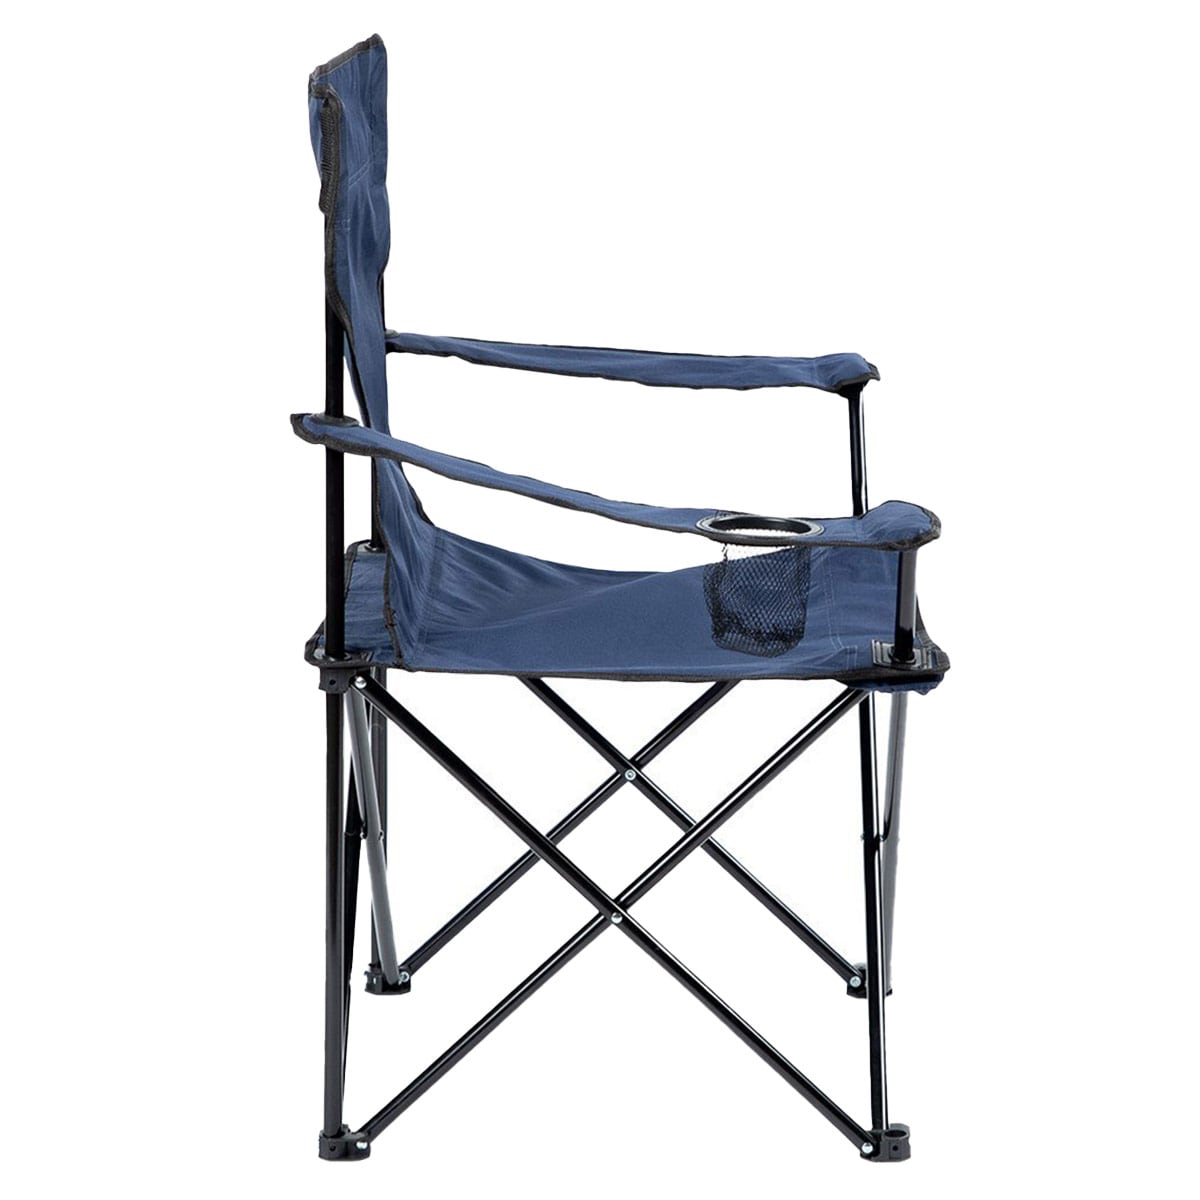 Krzesło turystyczne Nils Camp NC3044 - Niebieskie